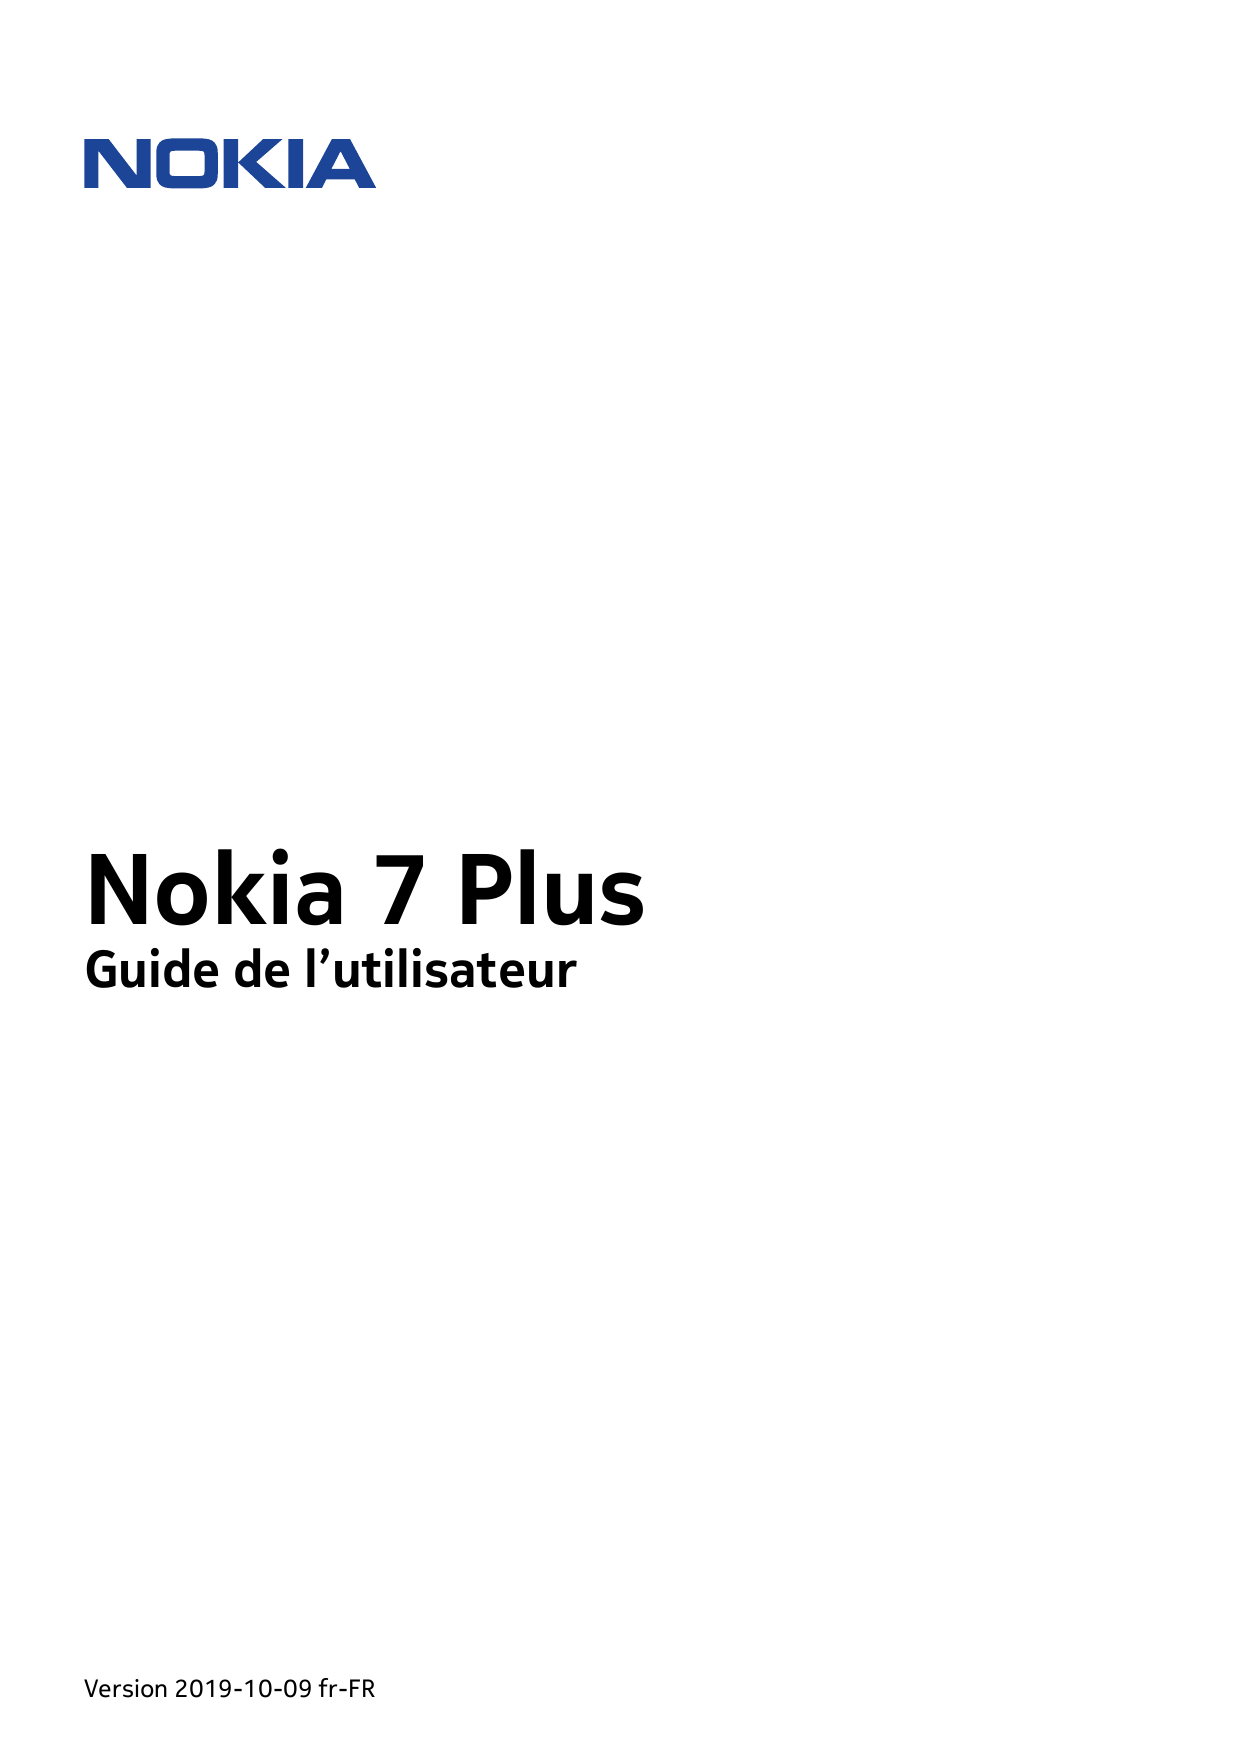 Nokia 7 PlusGuide de l’utilisateurVersion 2019-10-09 fr-FR